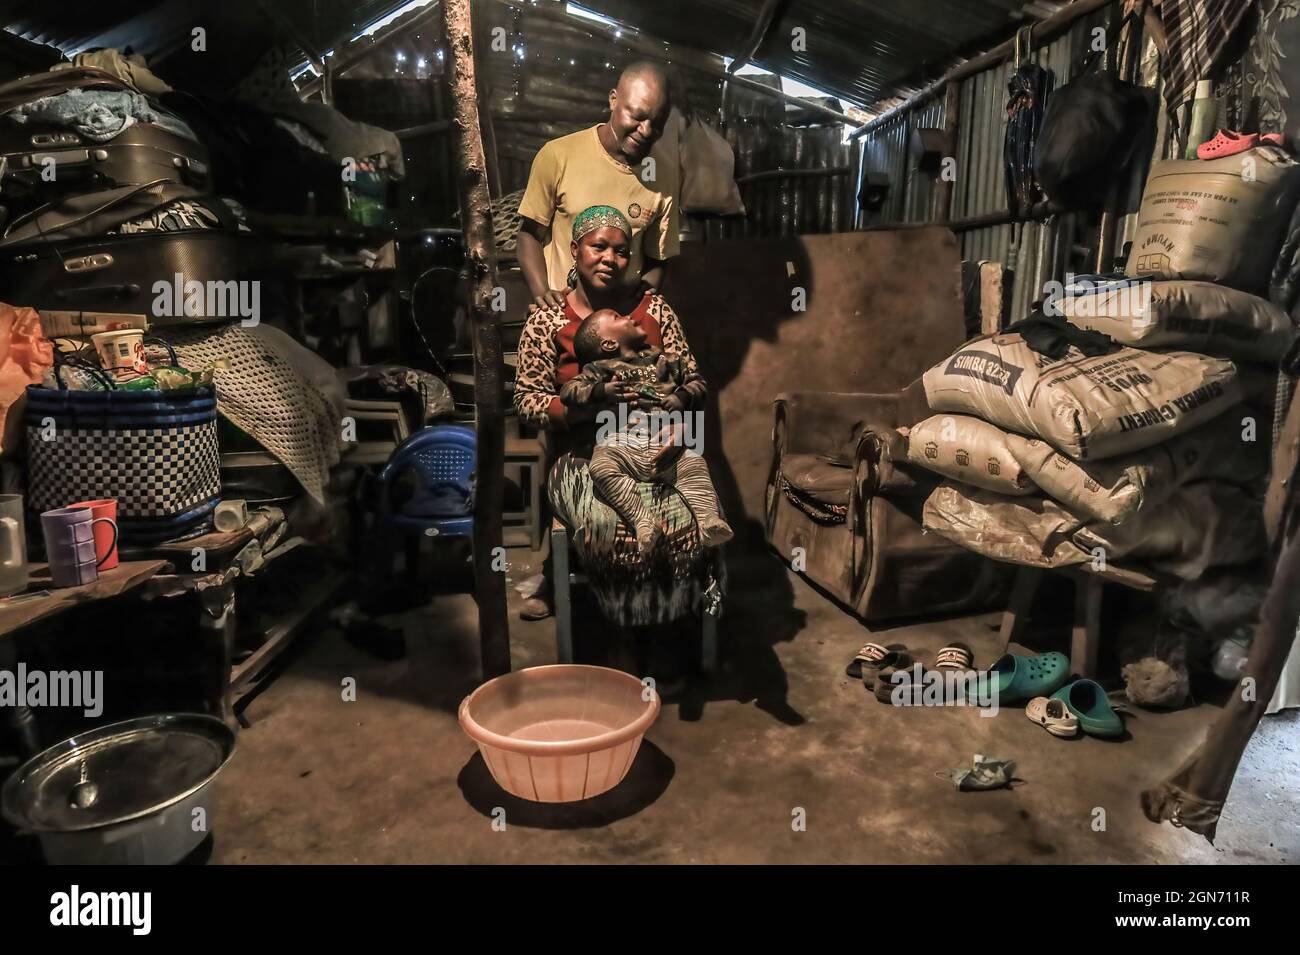 Charles Owigo (43) un membro del mestiere africano dell'osso prende una posizione con la sua famiglia alla sua casa nelle baraccopoli di Kibera, Nairobi. Un gruppo di artigiani dal mestiere africano dell'osso nelle baraccopoli di Kibera di Nairobi sta usando le ossa animali riciclate, corna e metalli di ottone per creare gioielli fatti a mano e decorazioni che sono poi venduti ai locali e turisti che a volte visiterebbero il laboratorio. Le ossa africane sono iniziate nel 2006 con un numero totale di 17 membri del gruppo che dipendono entrambi dal mestiere per vivere. Hanno continuato a lavorare nonostante le sfide affrontate dalla recente SA limitata Foto Stock